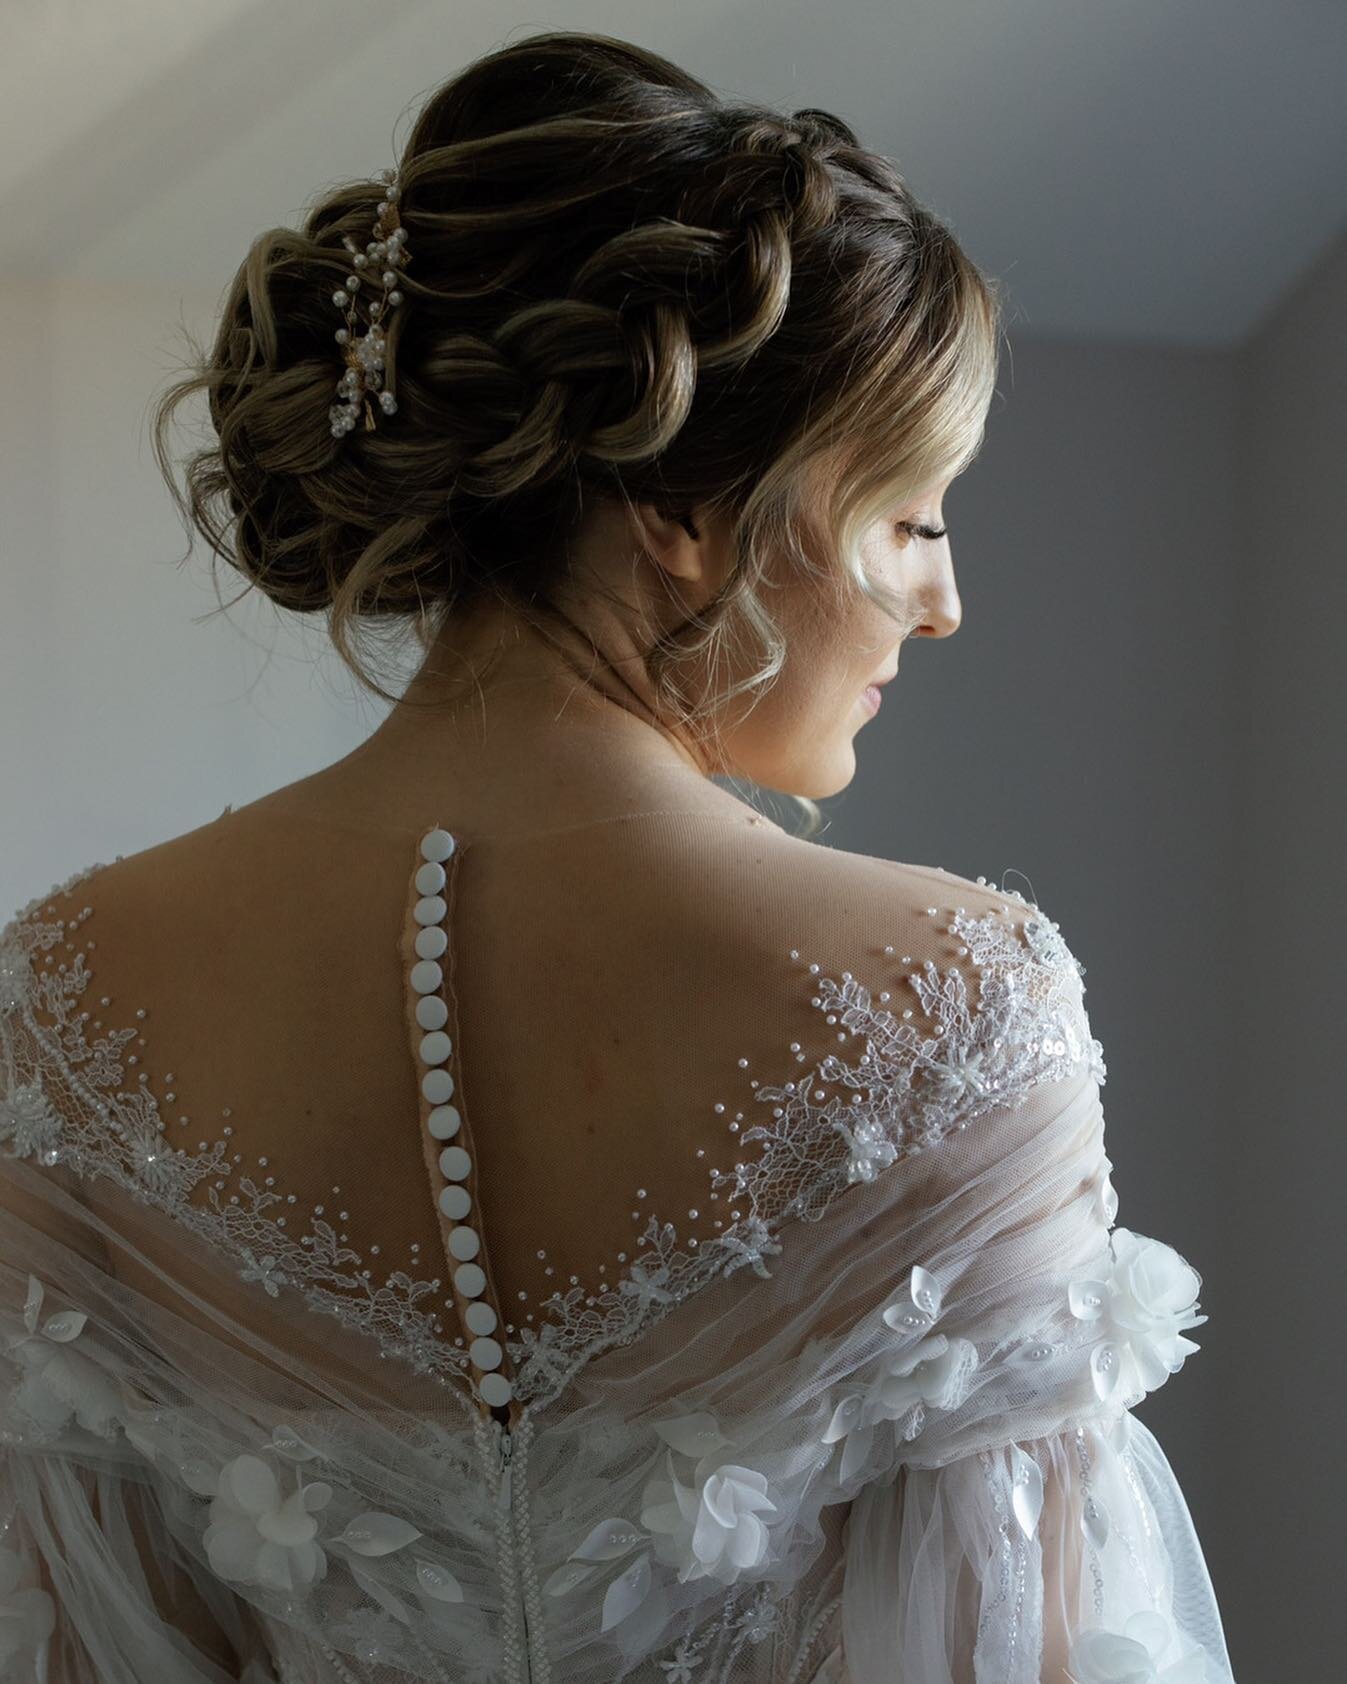 The perfect bride 😍